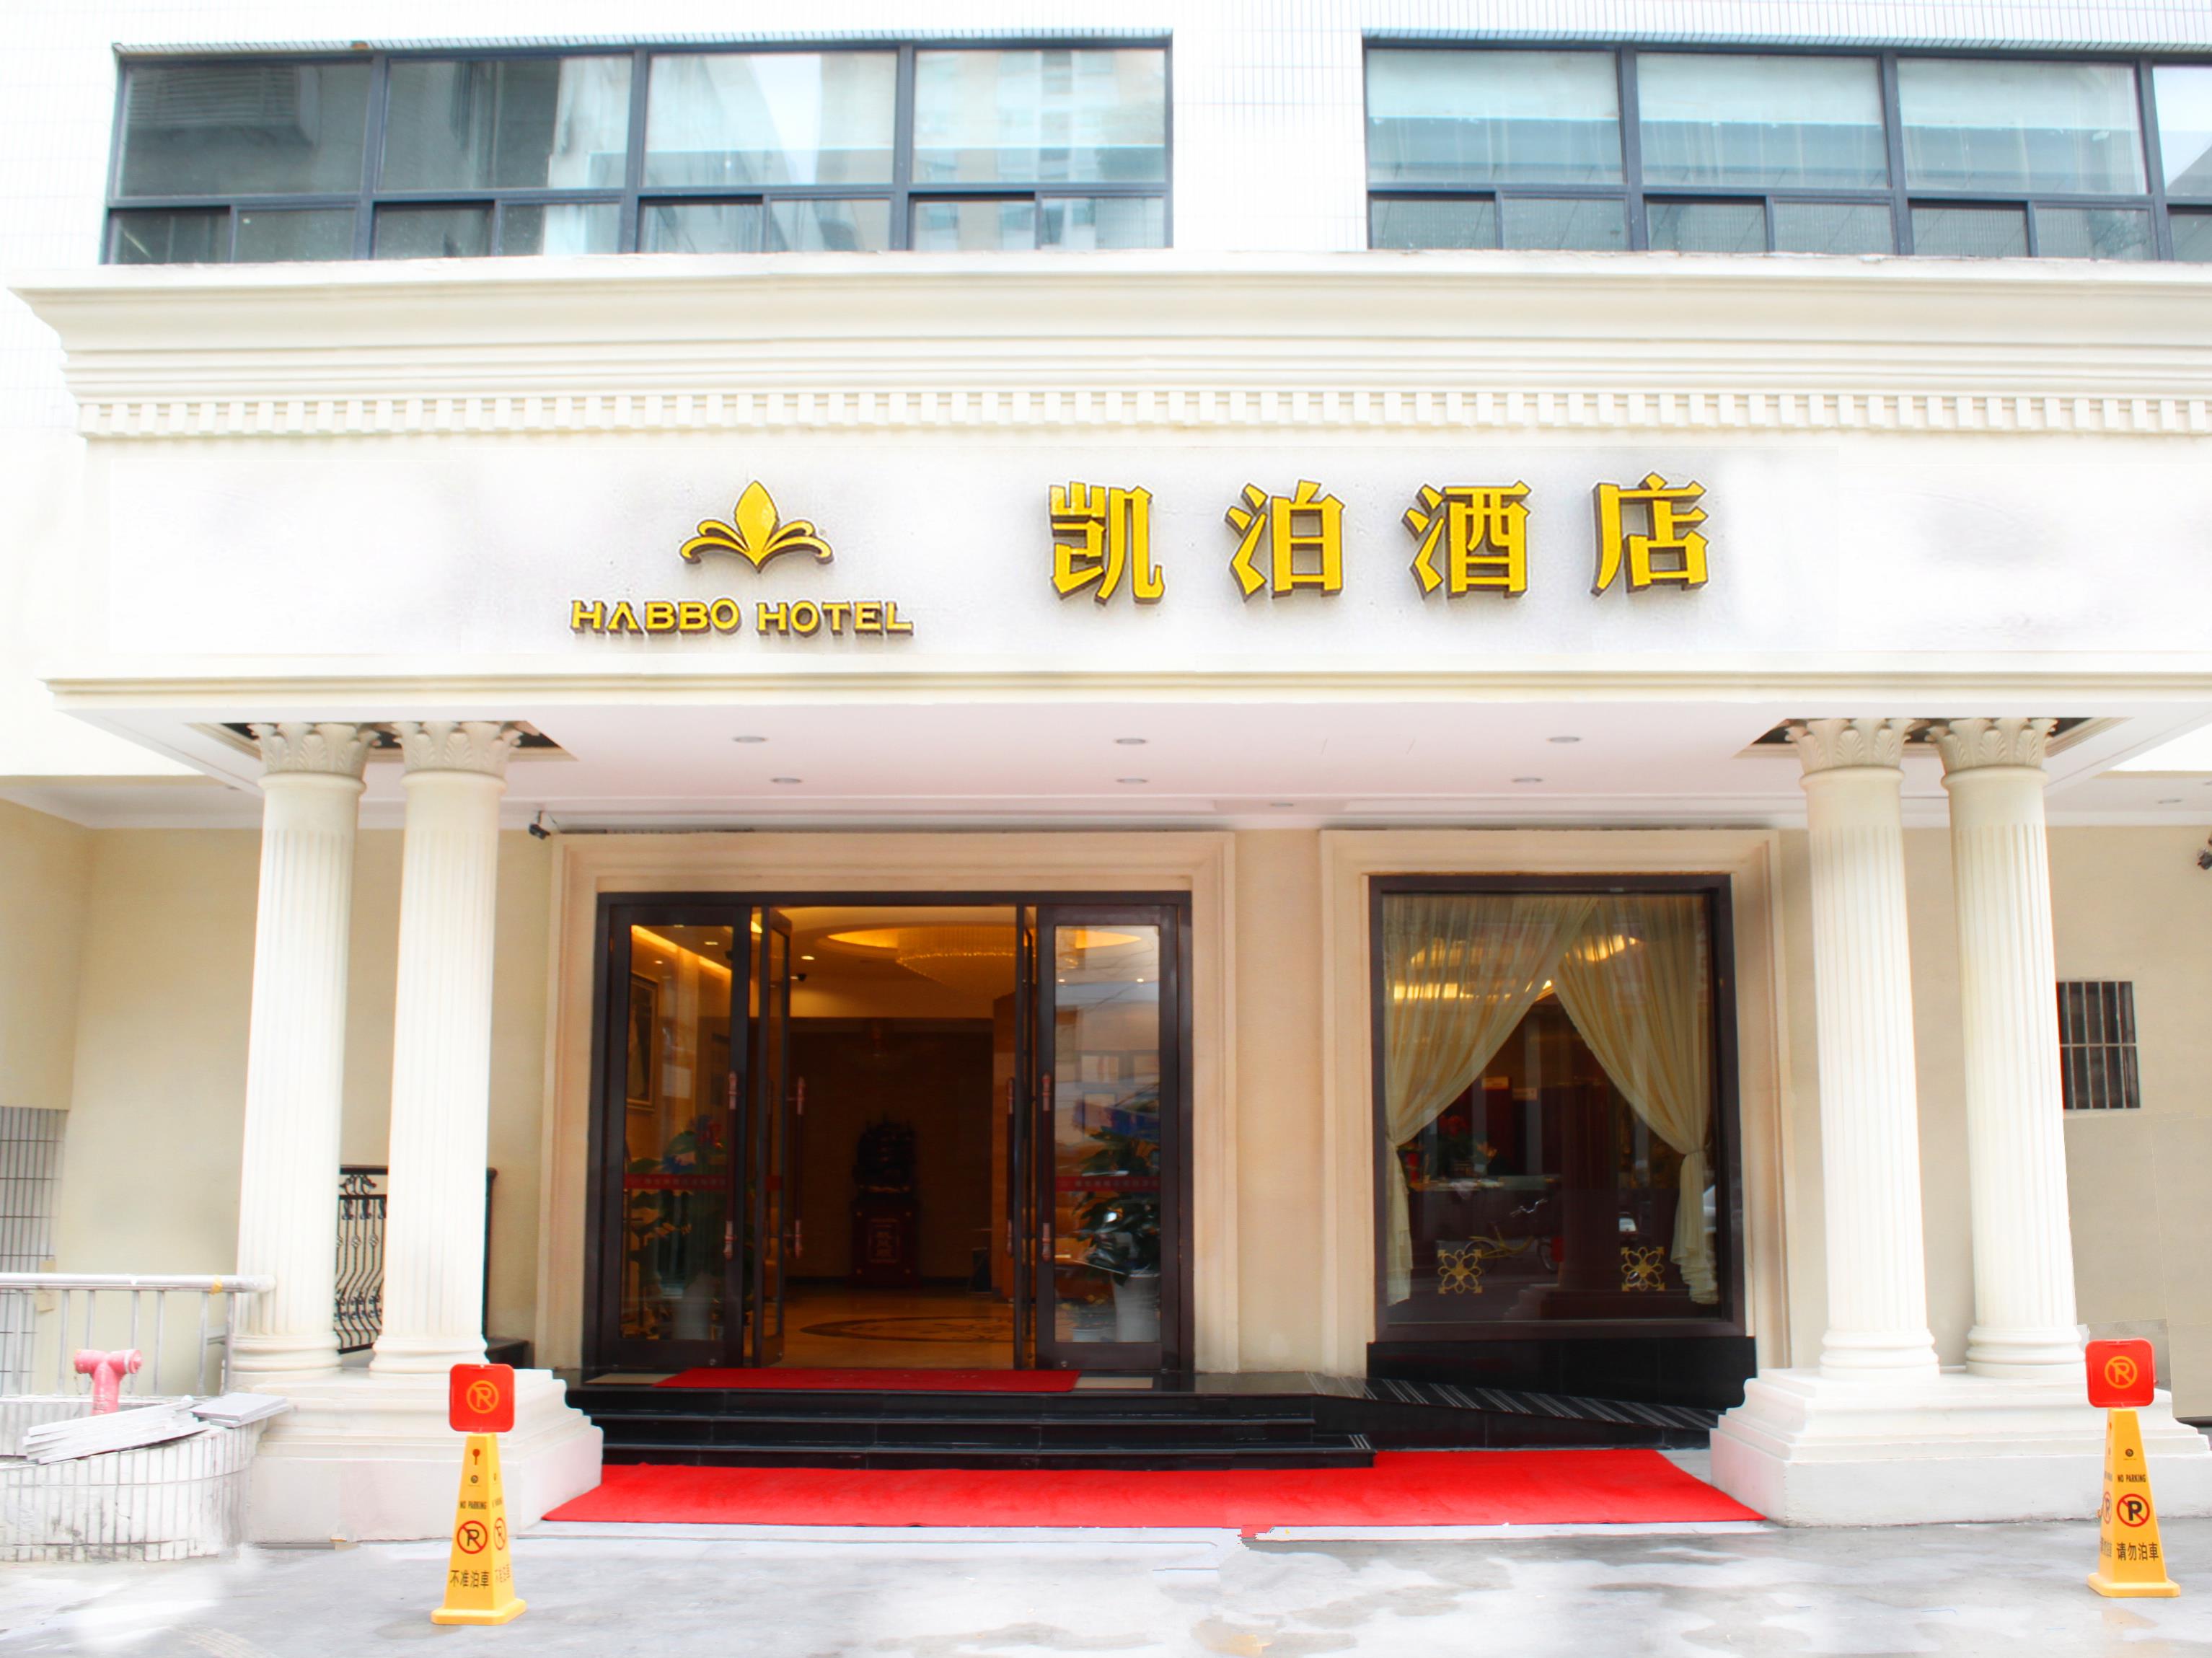 Wuxi Habbo Hotel Zhong Shan Road - Wuxi , HD Wallpaper & Backgrounds